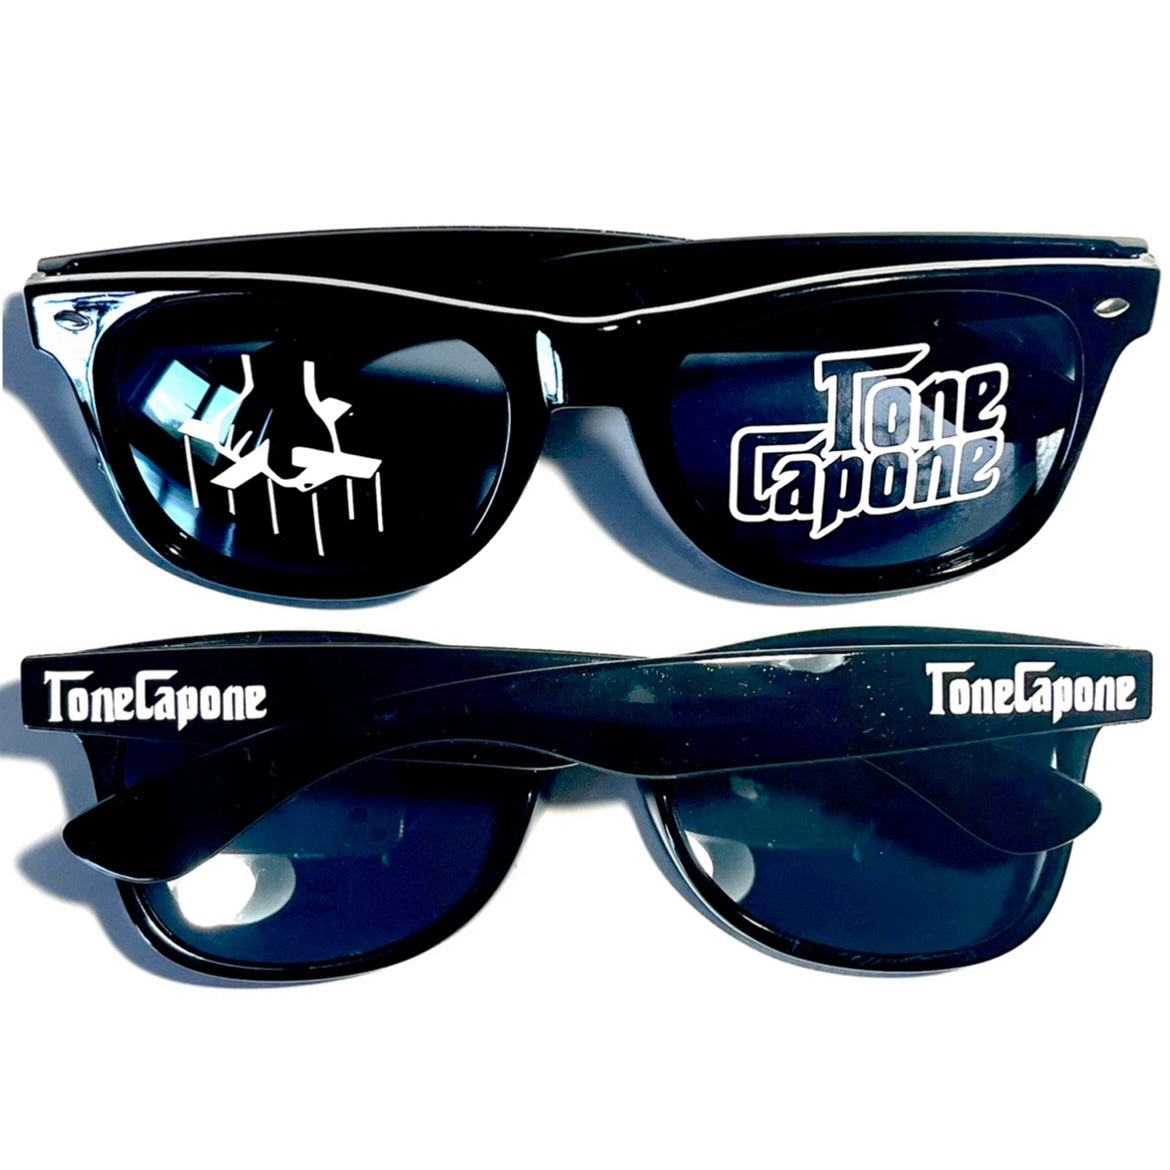 Tone Capone Sunglasses